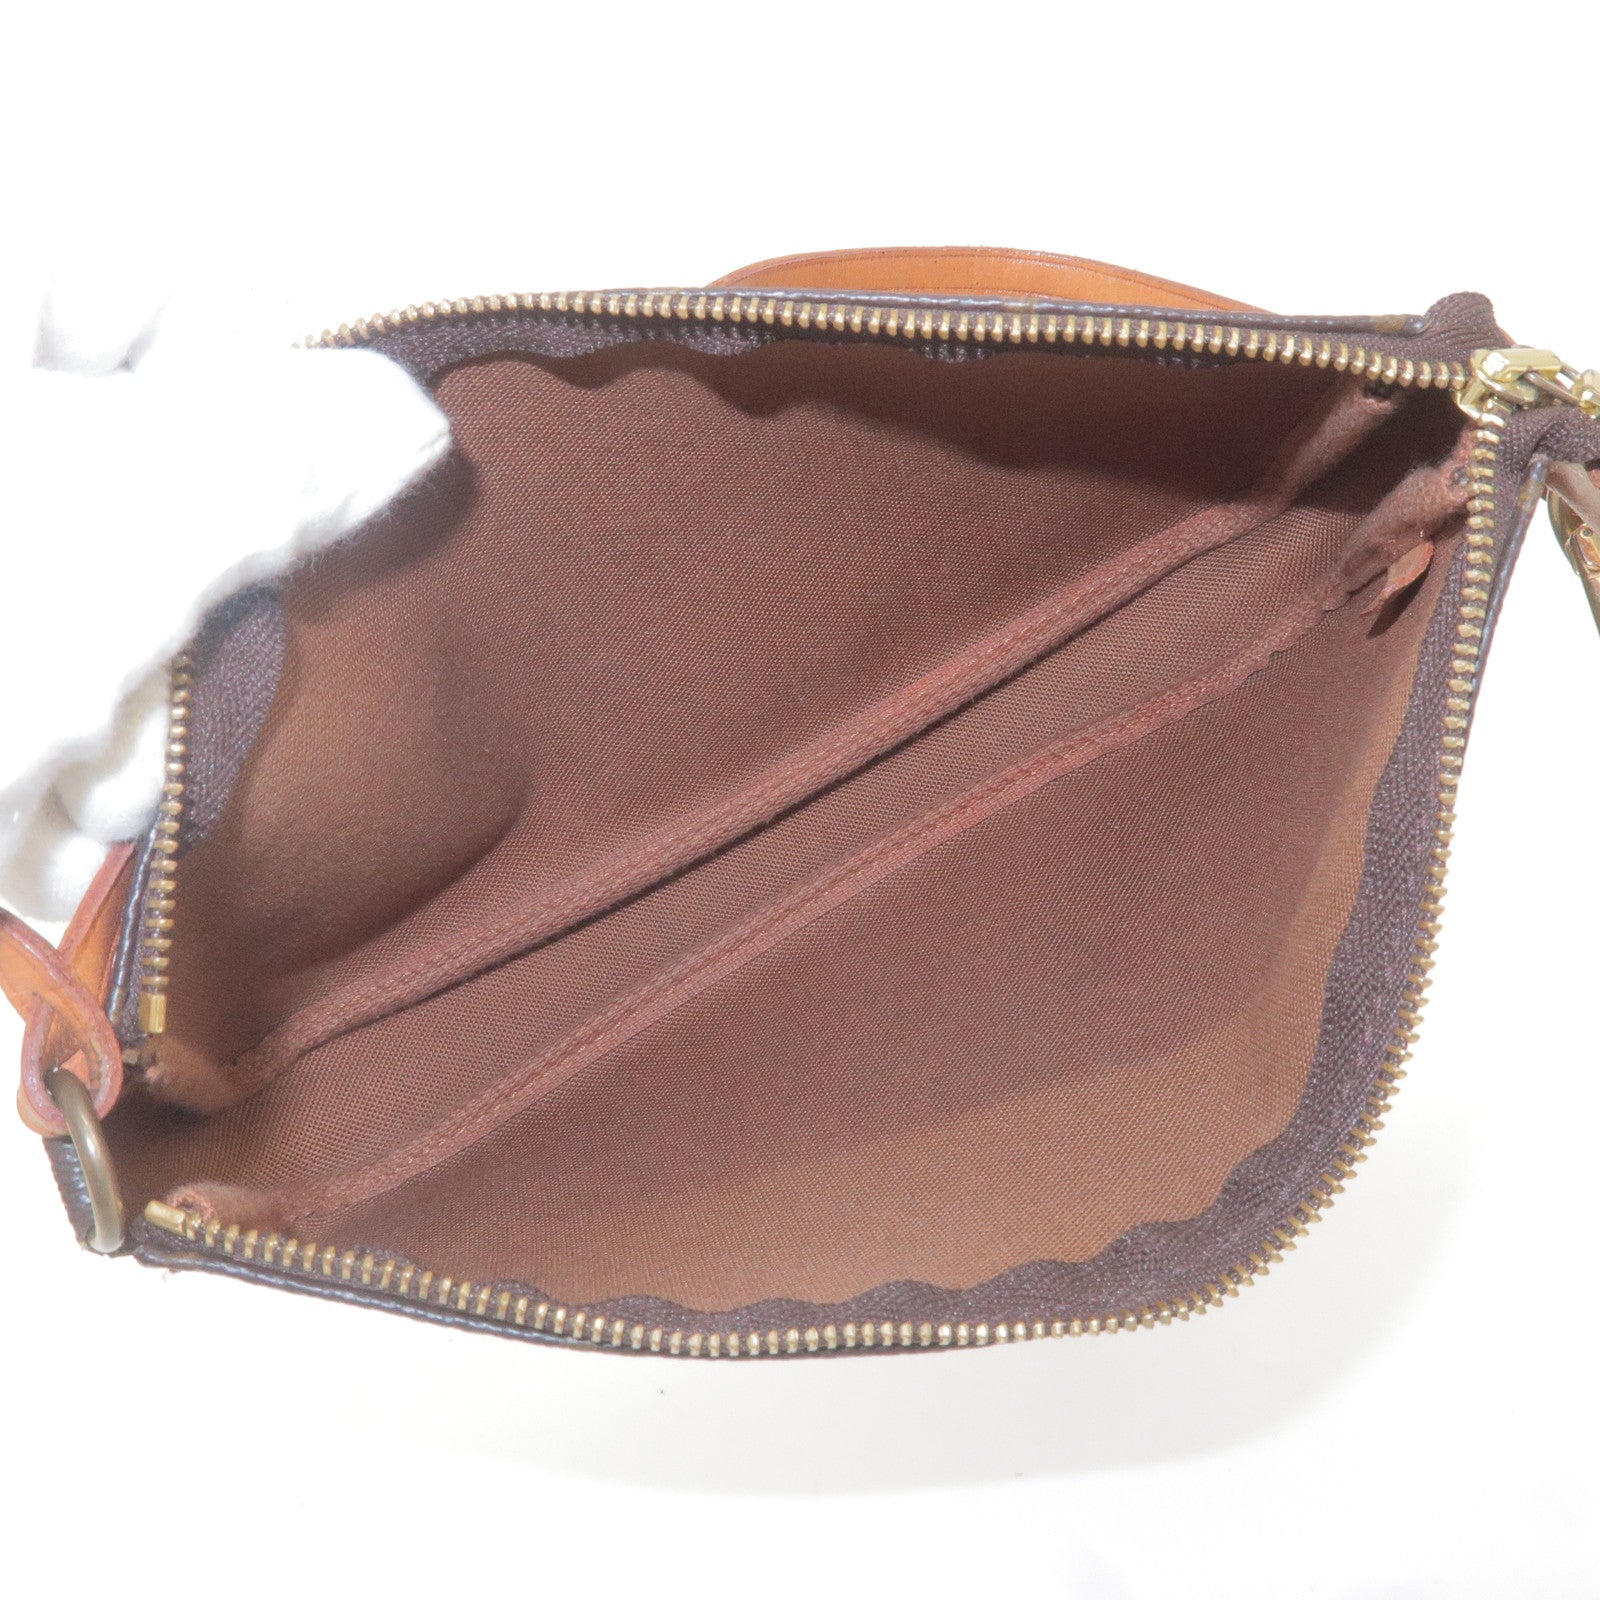 Auth LOUIS VUITTON Pochette Accessoires M51980 Monogram AR0013 Handbag